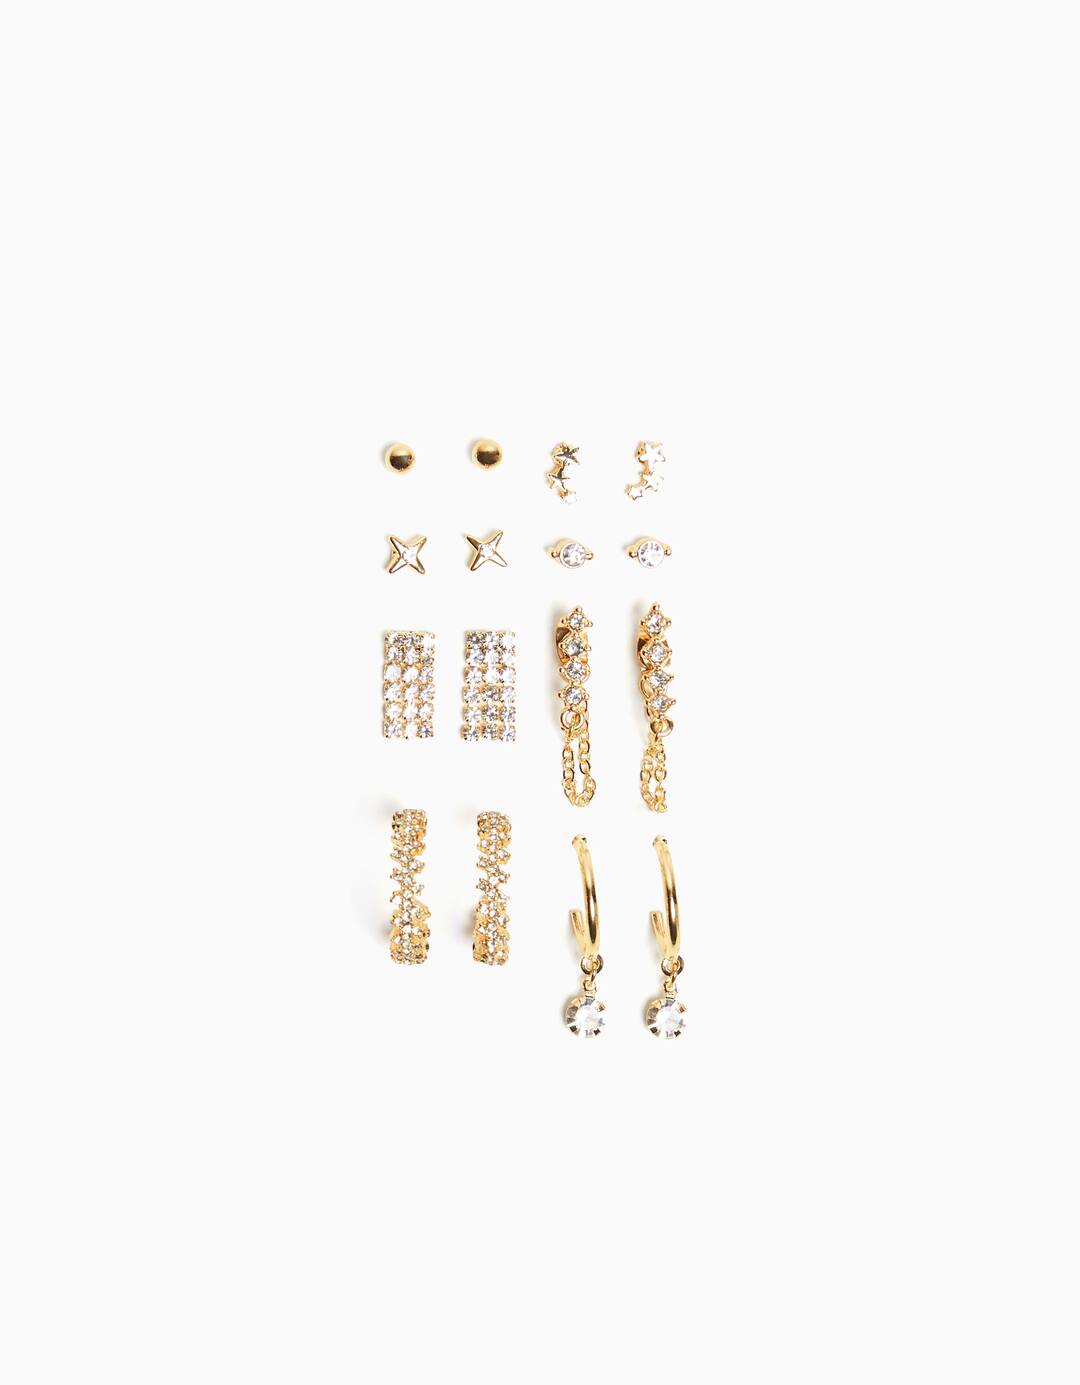 Set of 8 rhinestone hoop earrings